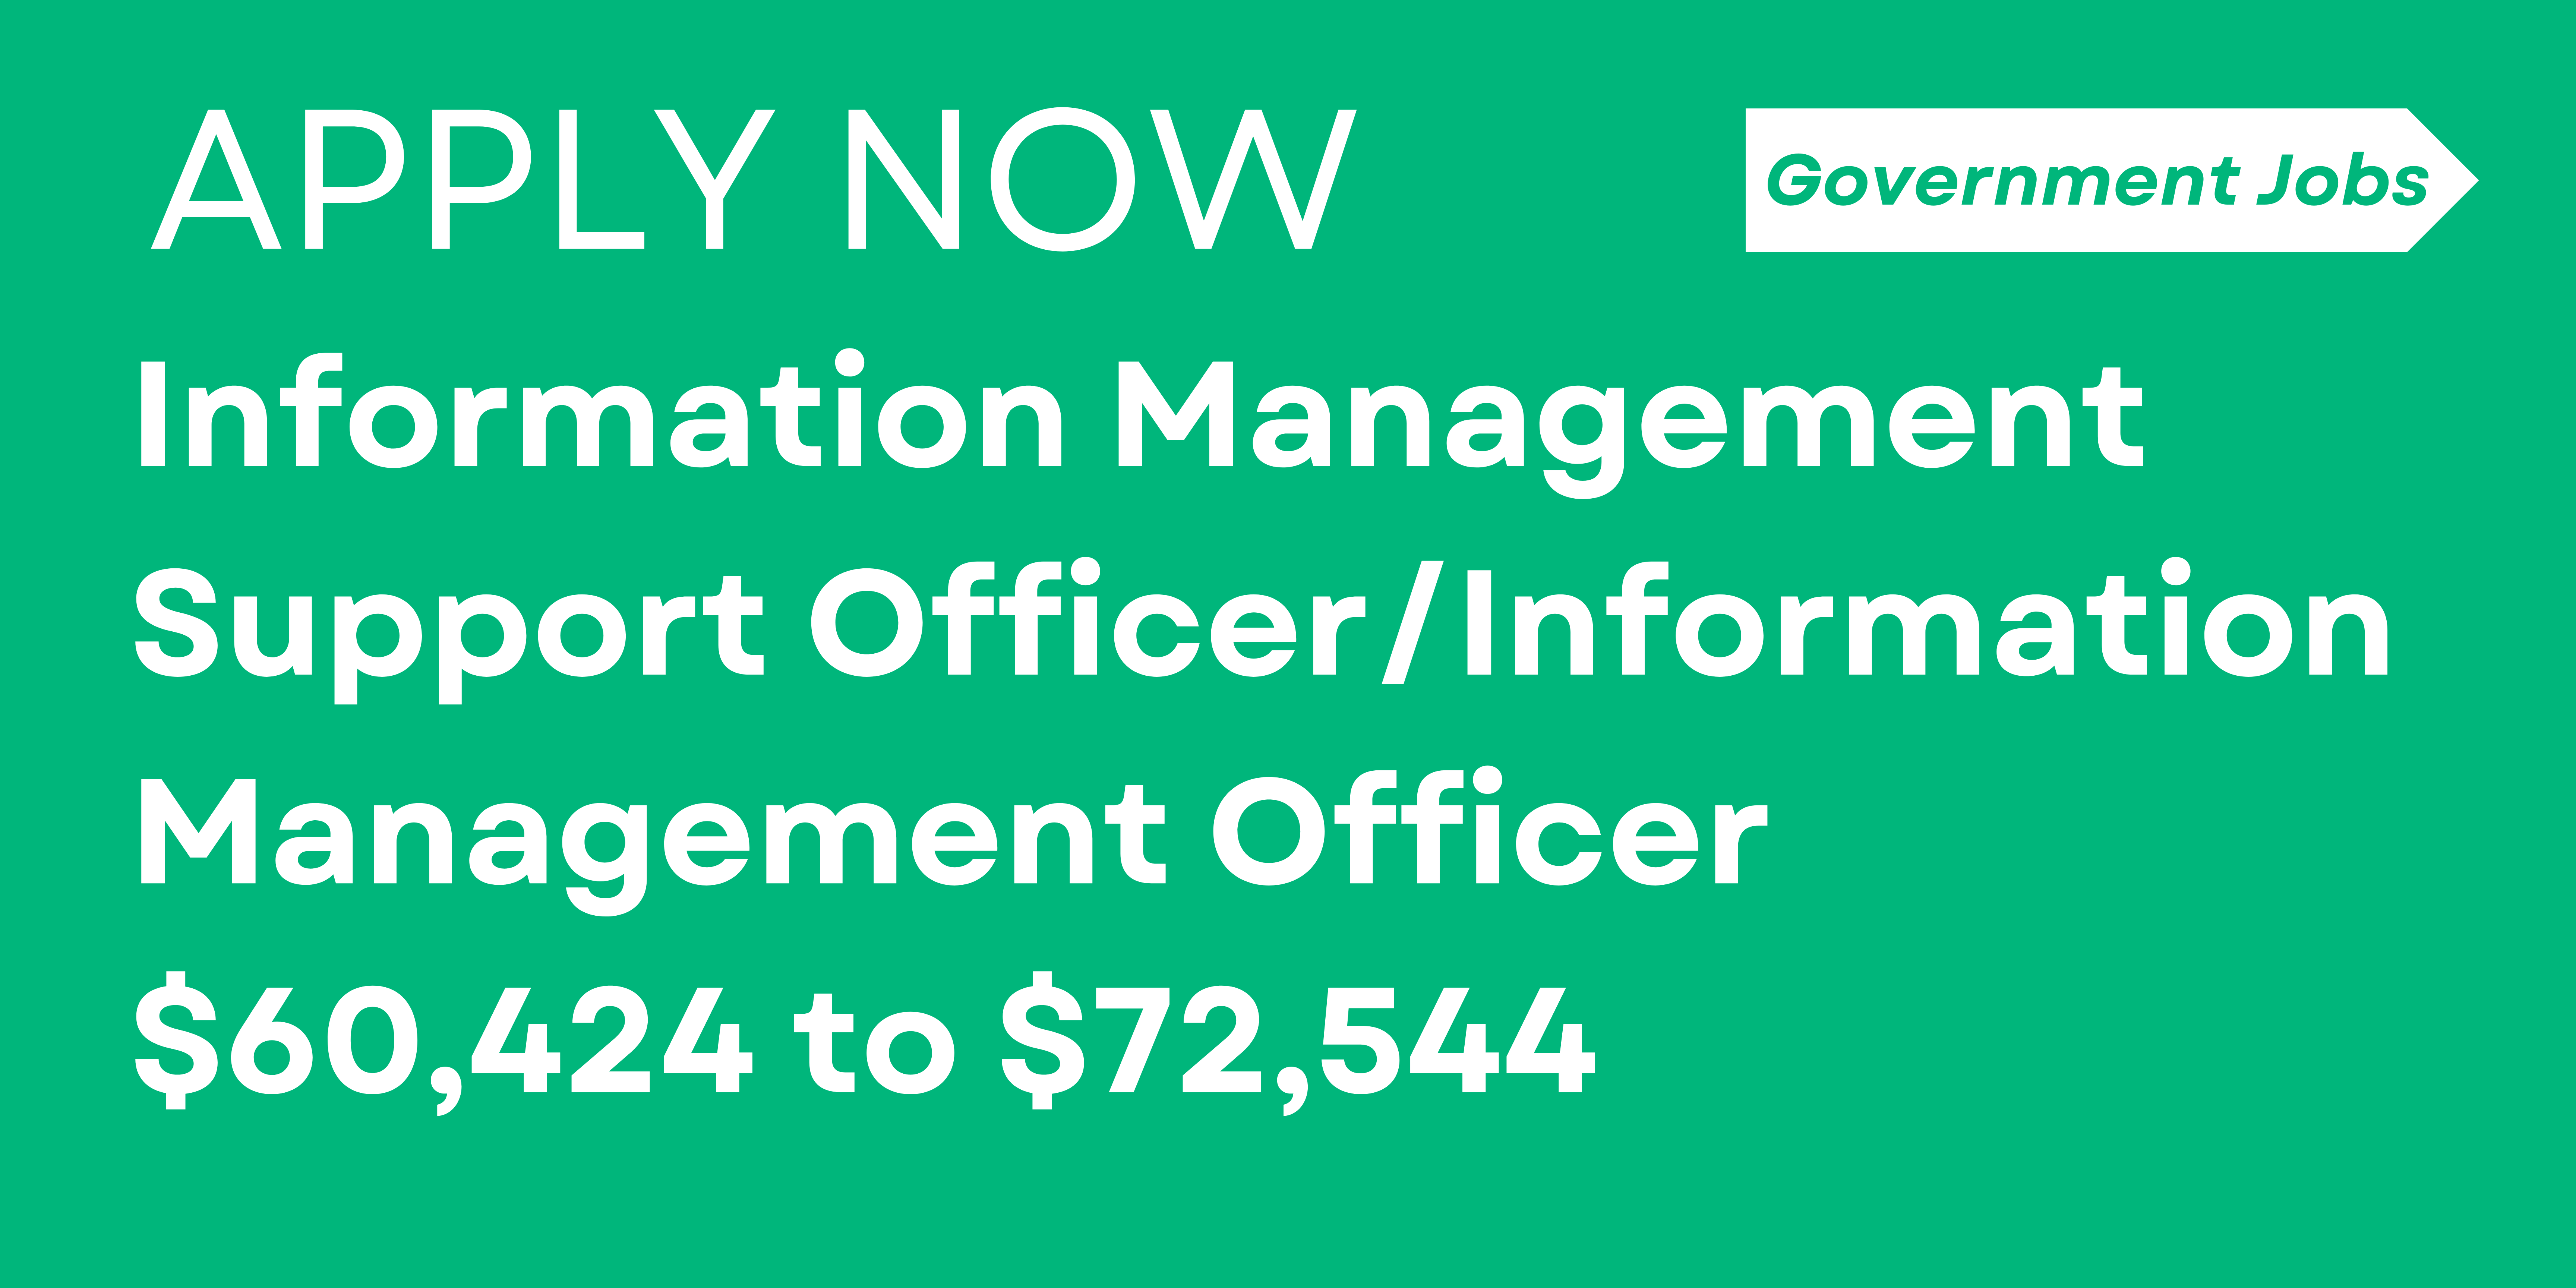 Information Management Support Officer/Information Management Officer